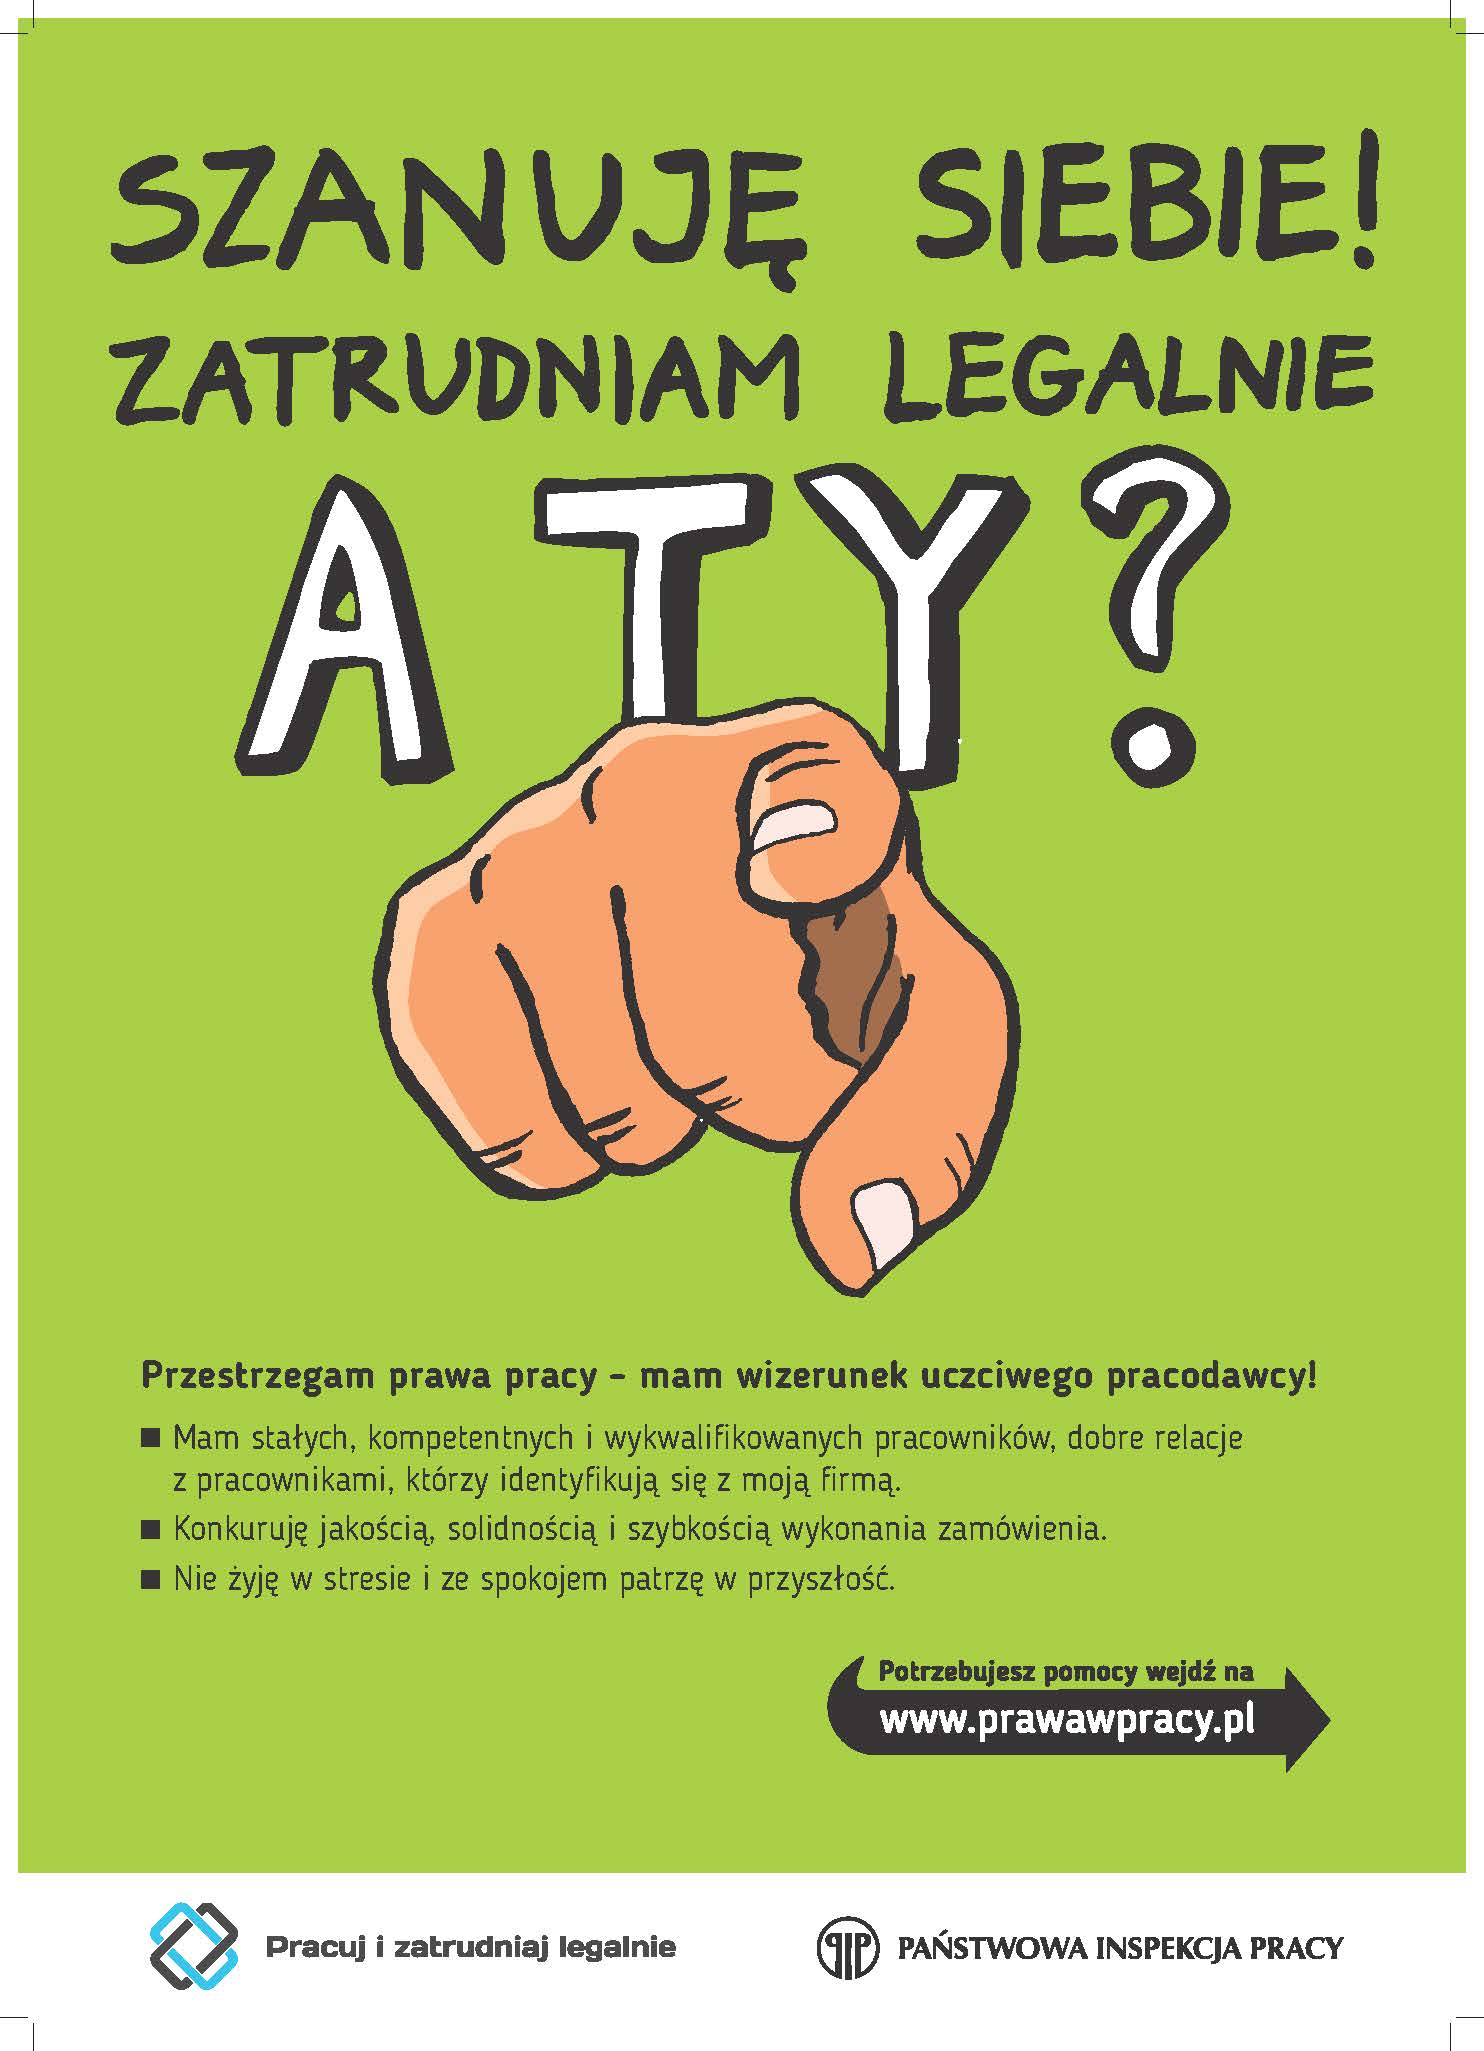 plakat kampanii - zatrudniam legalnie